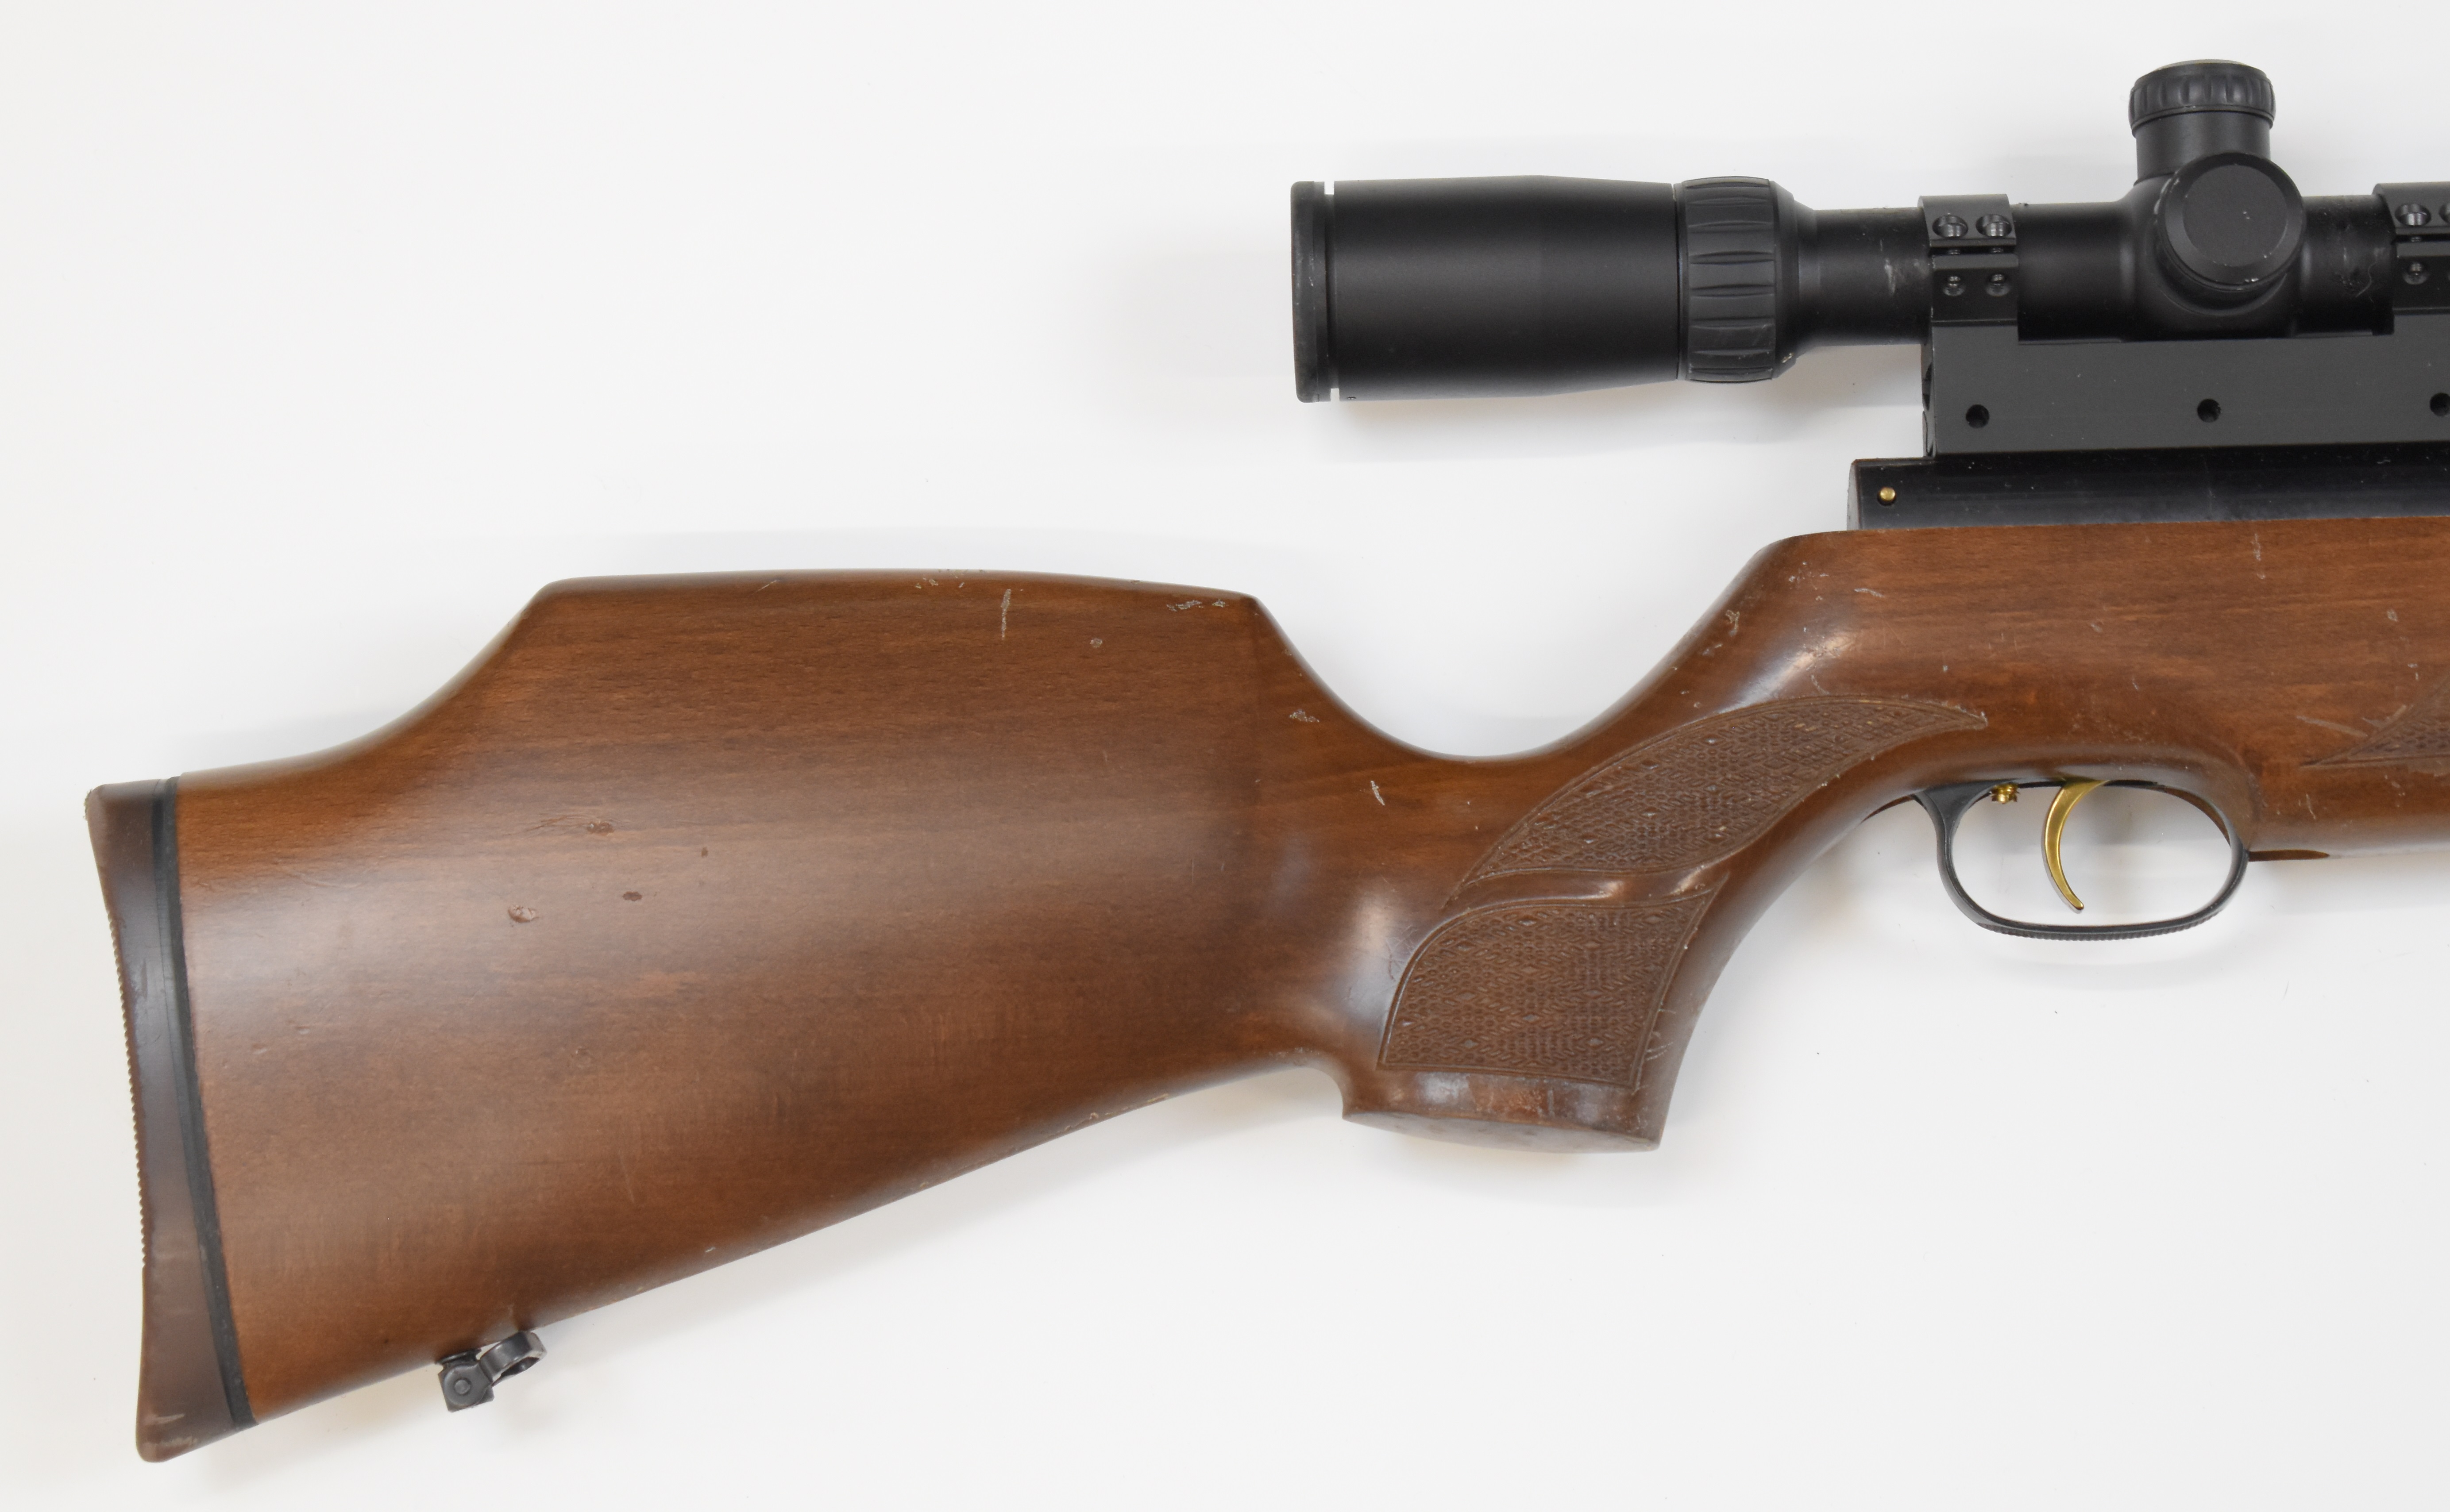 Weihrauch HW97K .177 underlever air rifle with chequered semi-pistol grip, raised cheek piece, sling - Image 3 of 10